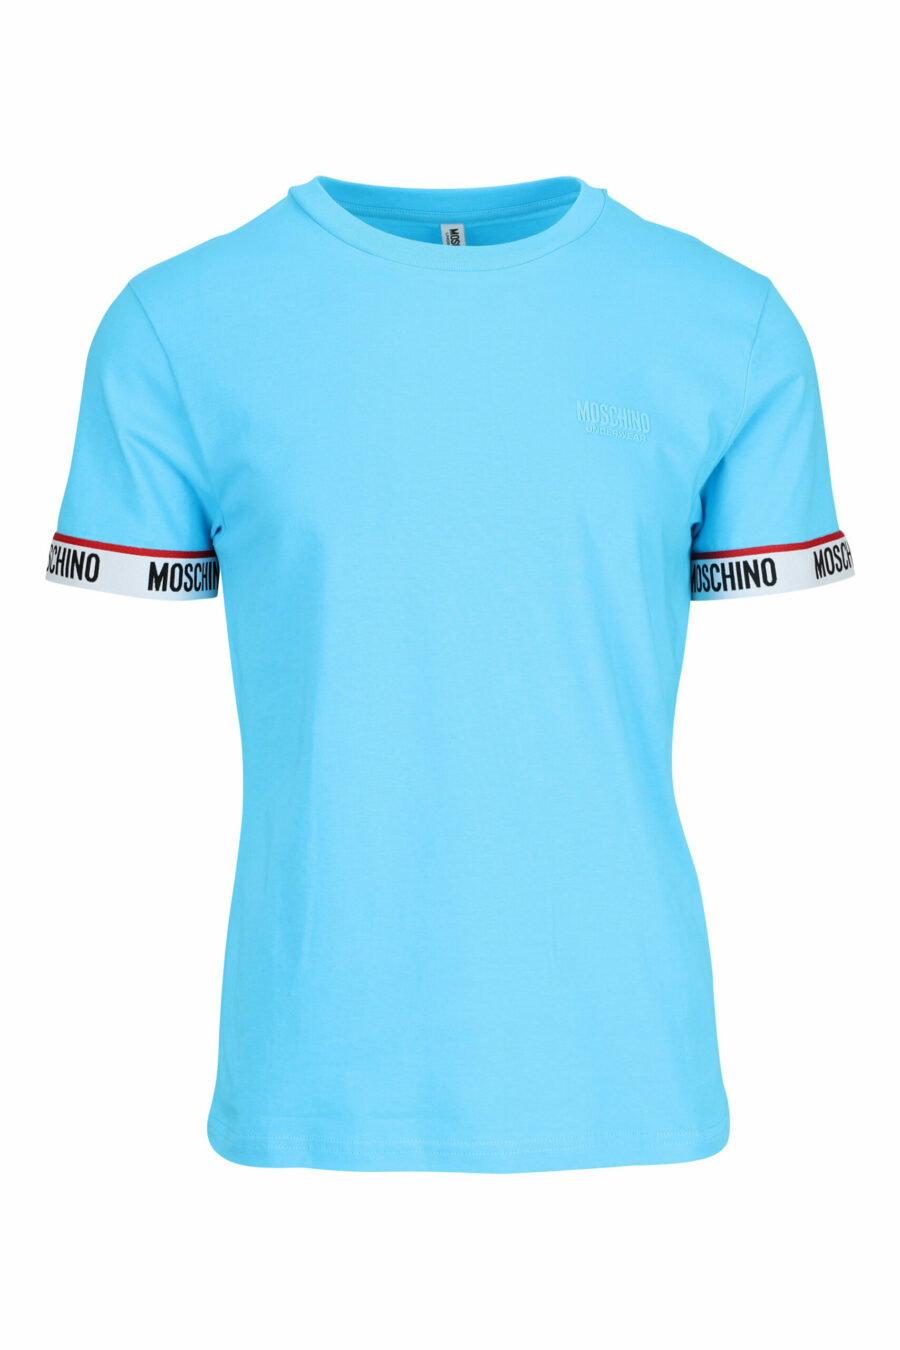 Hellblaues T-Shirt mit weißem Logo am Ärmel - 667113604626 skaliert